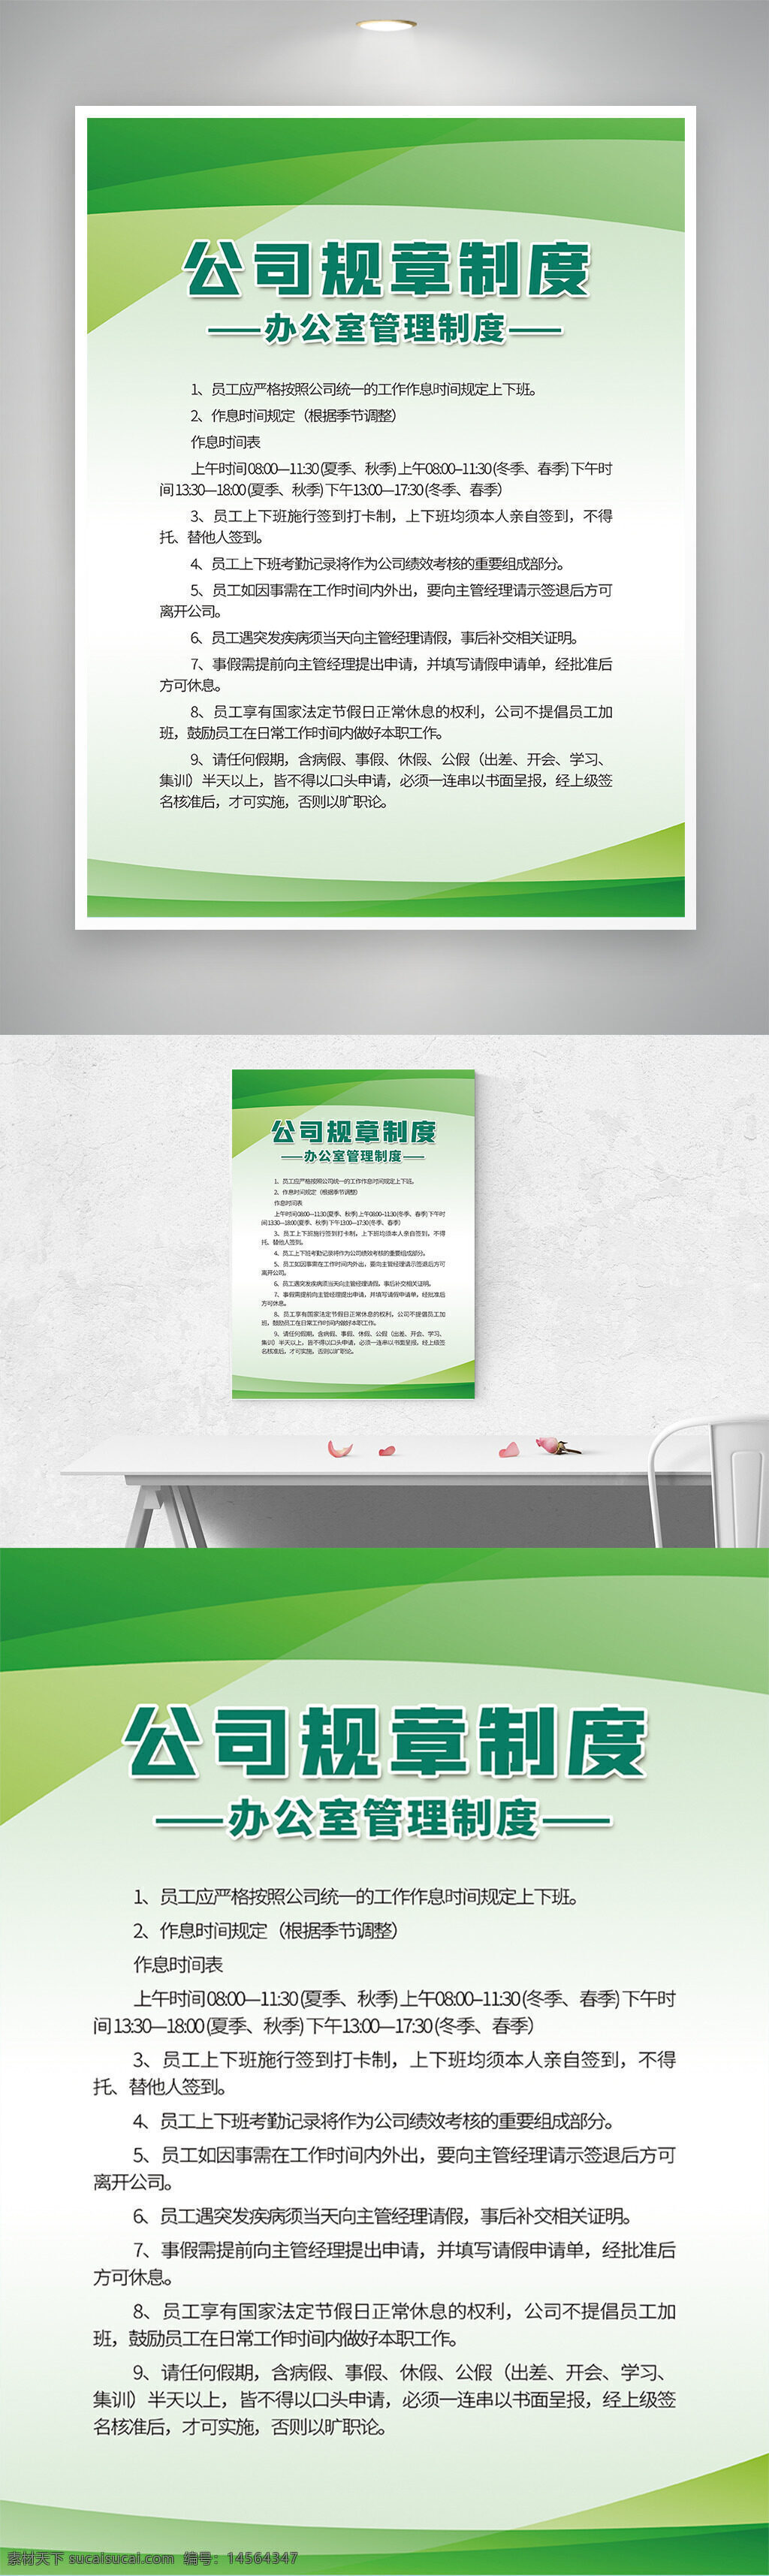 大气 公司管理 公司管理规章制度 n 公司制度 简约 客理制度 绿色 企业文化海报 制度 制度牌